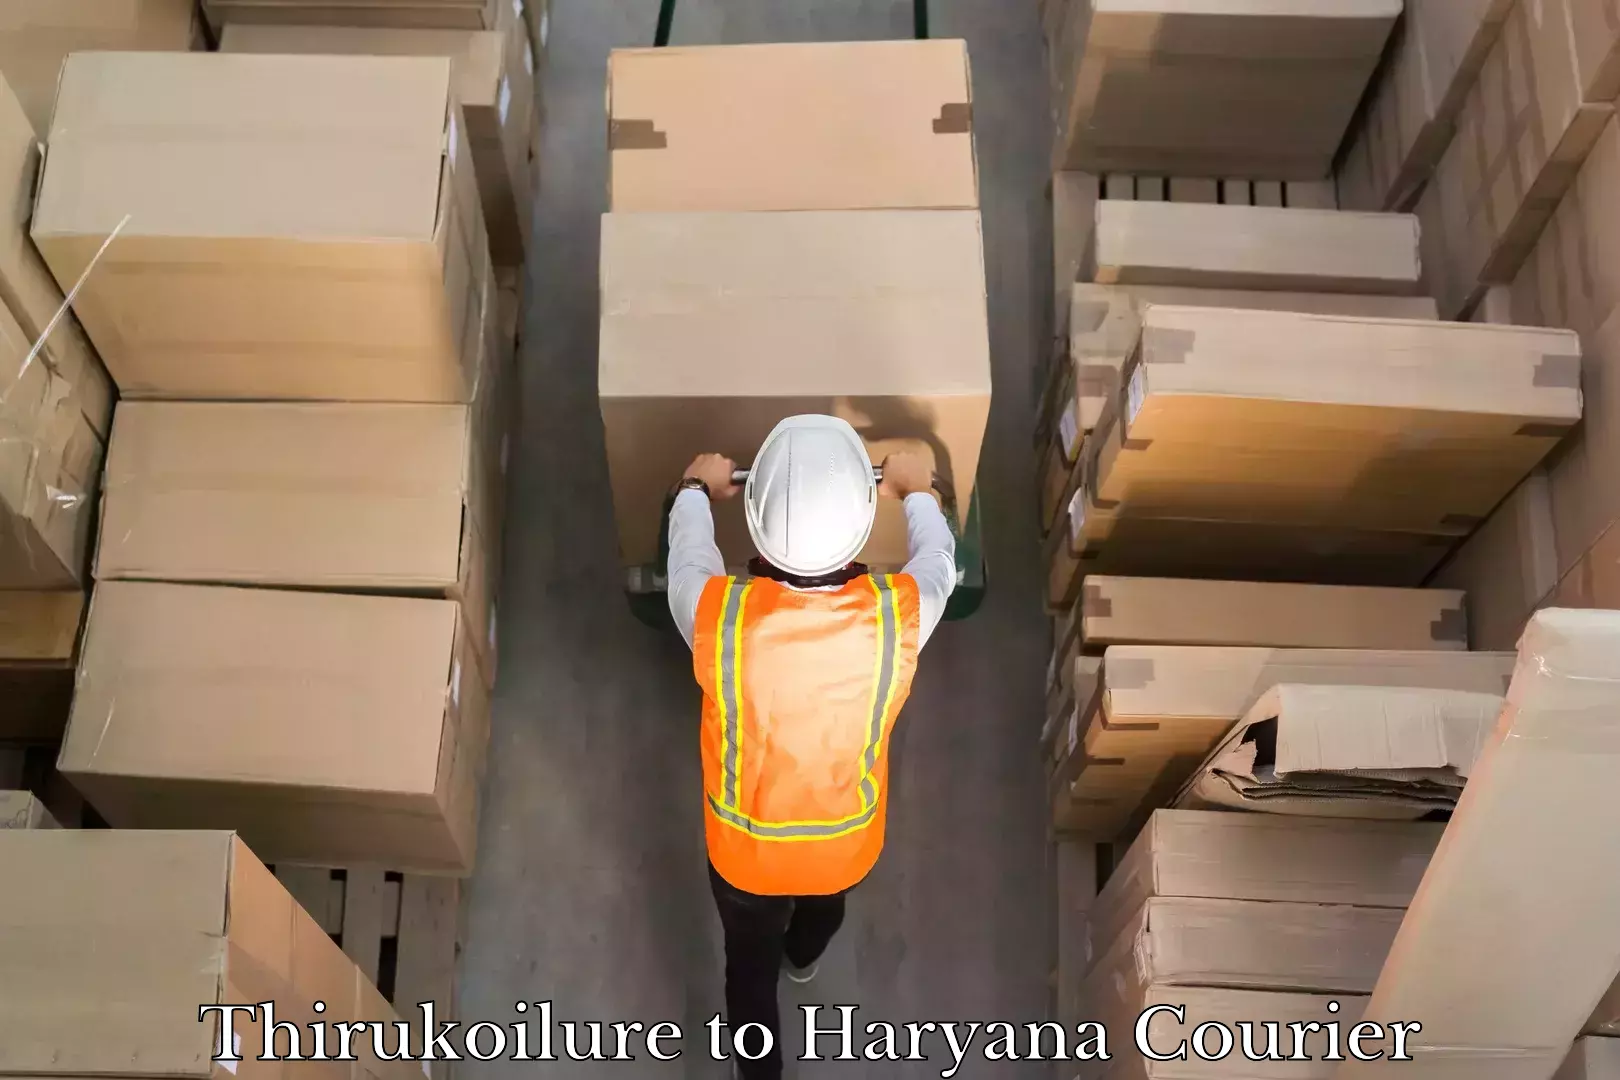 Rapid freight solutions Thirukoilure to Haryana